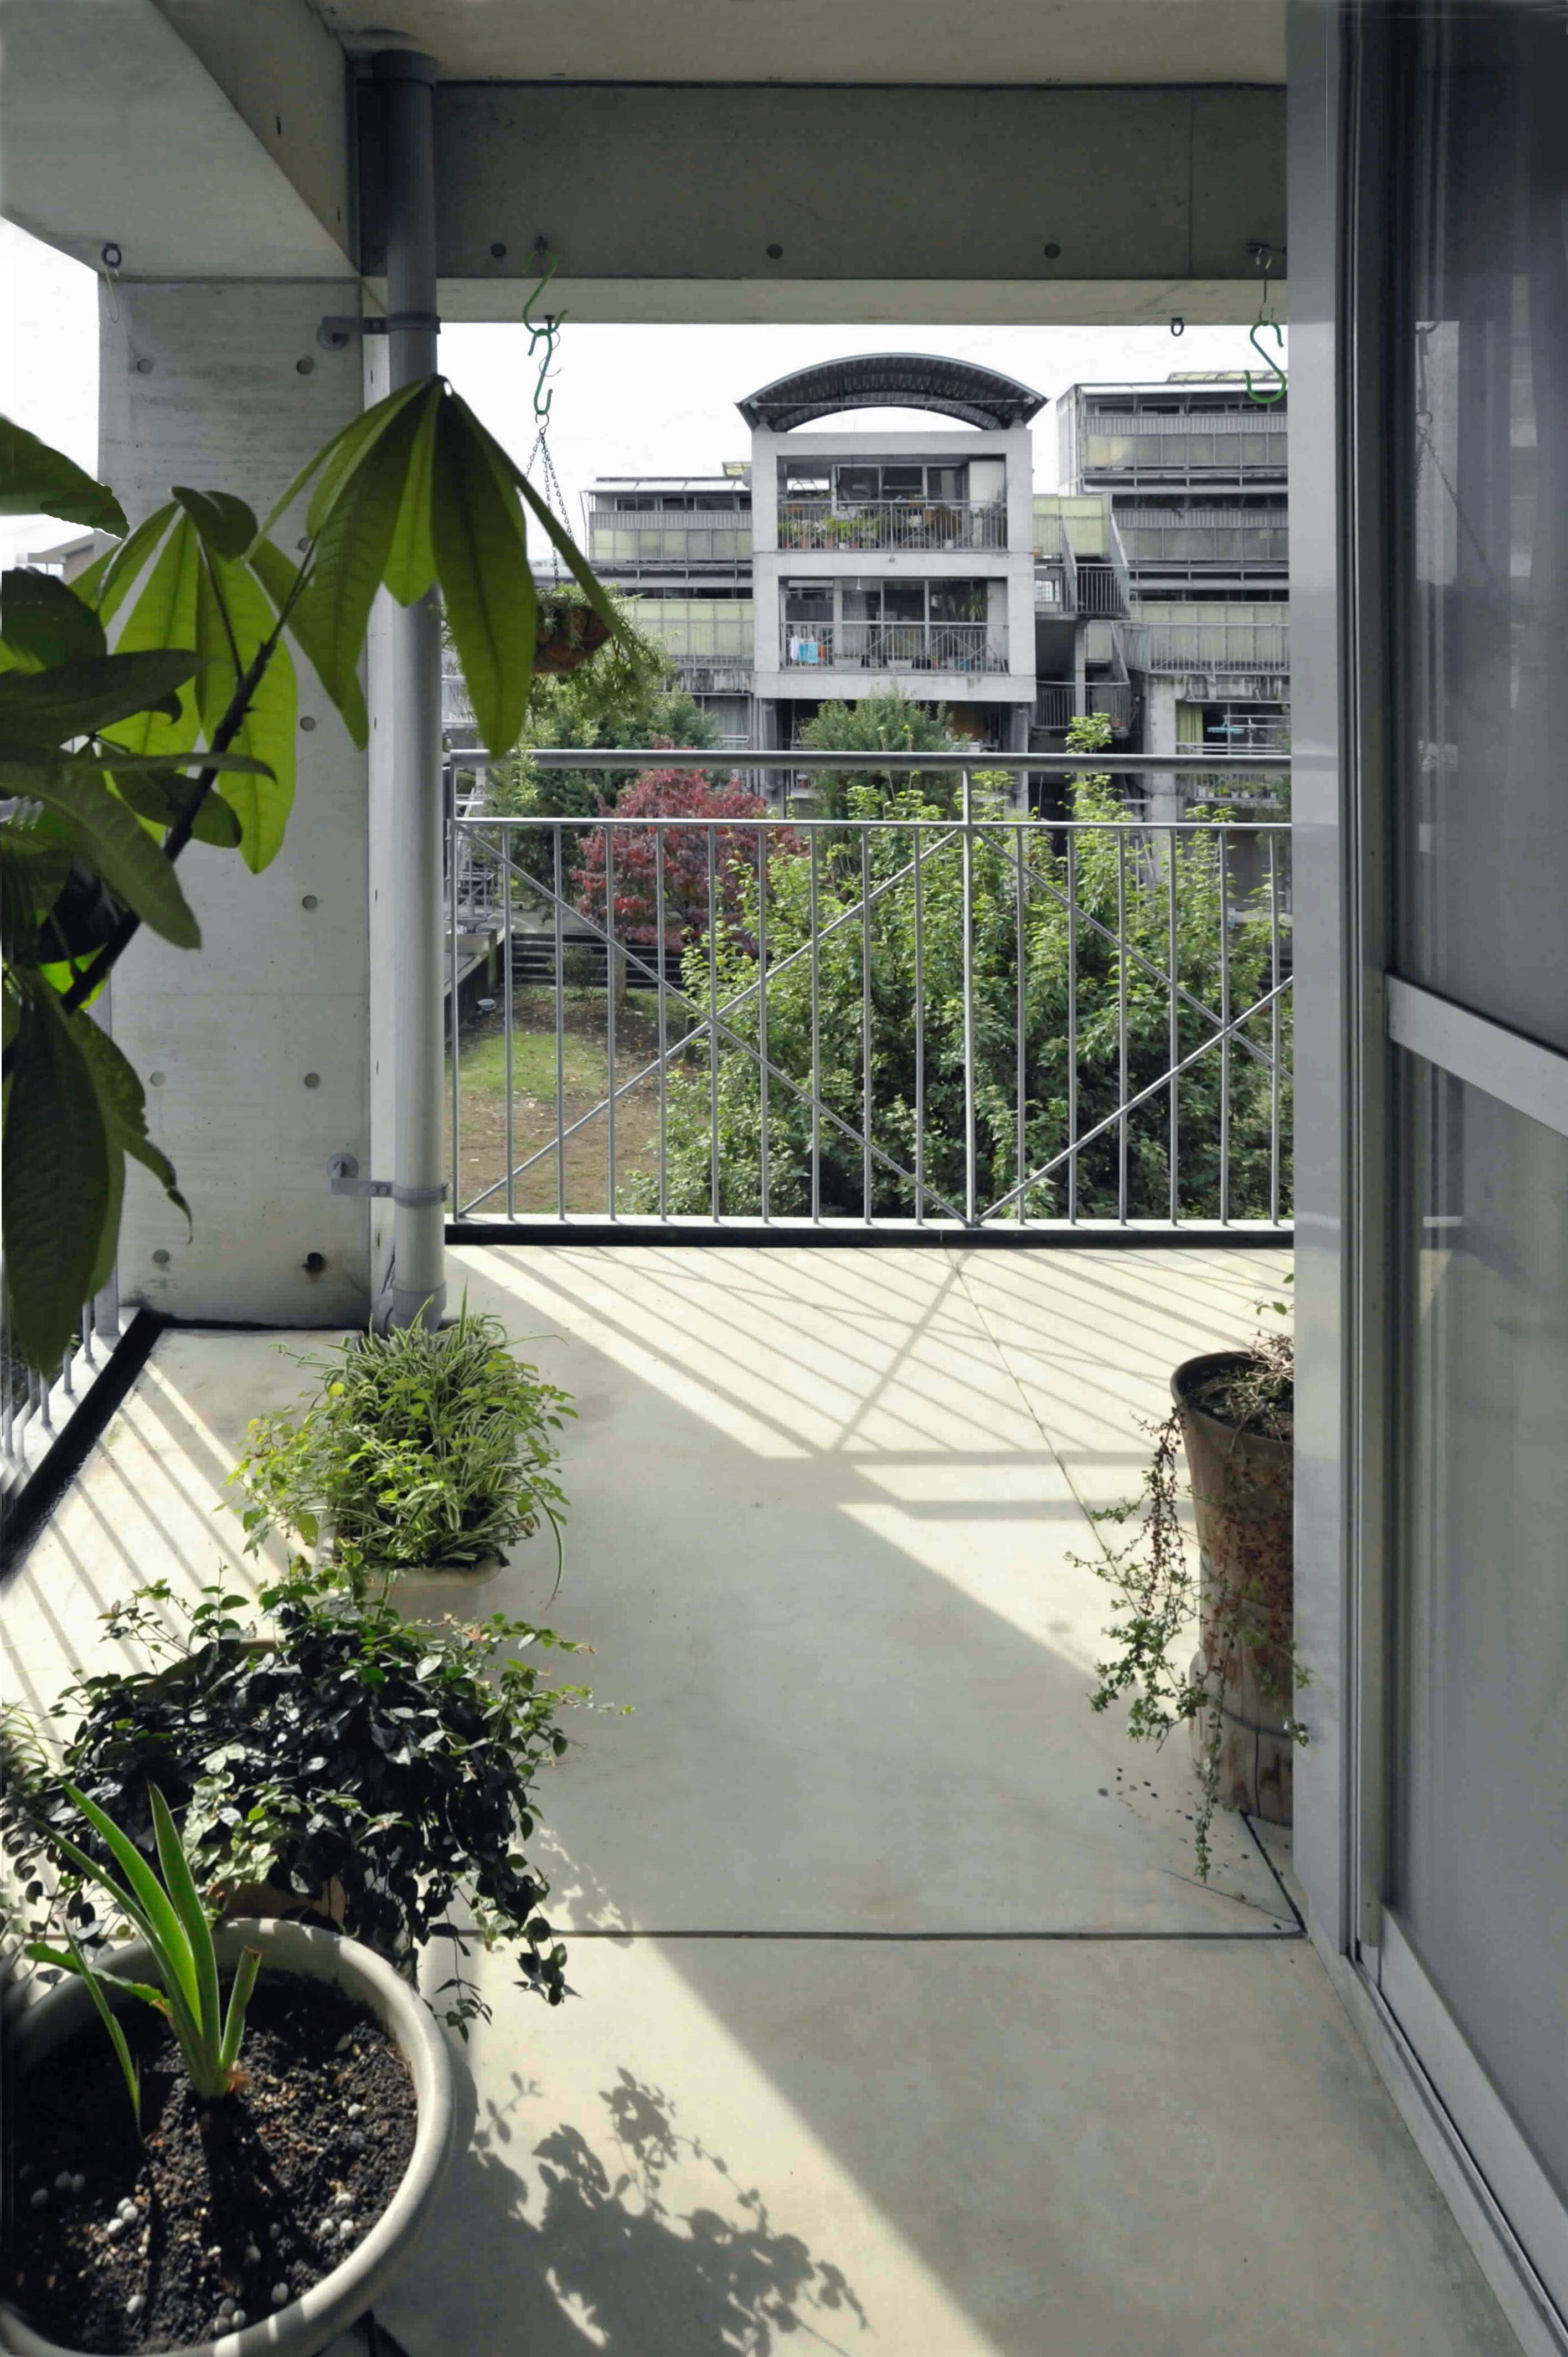 Viviendas Hotakubo en Kumamoto, 1991. El arquitecto reparó la rigidez moderna con cubiertas semicirculares en voladizo y terrazas que amplían la vivienda y actualizan la machiya tradicional japonesa con espacios colectivos.